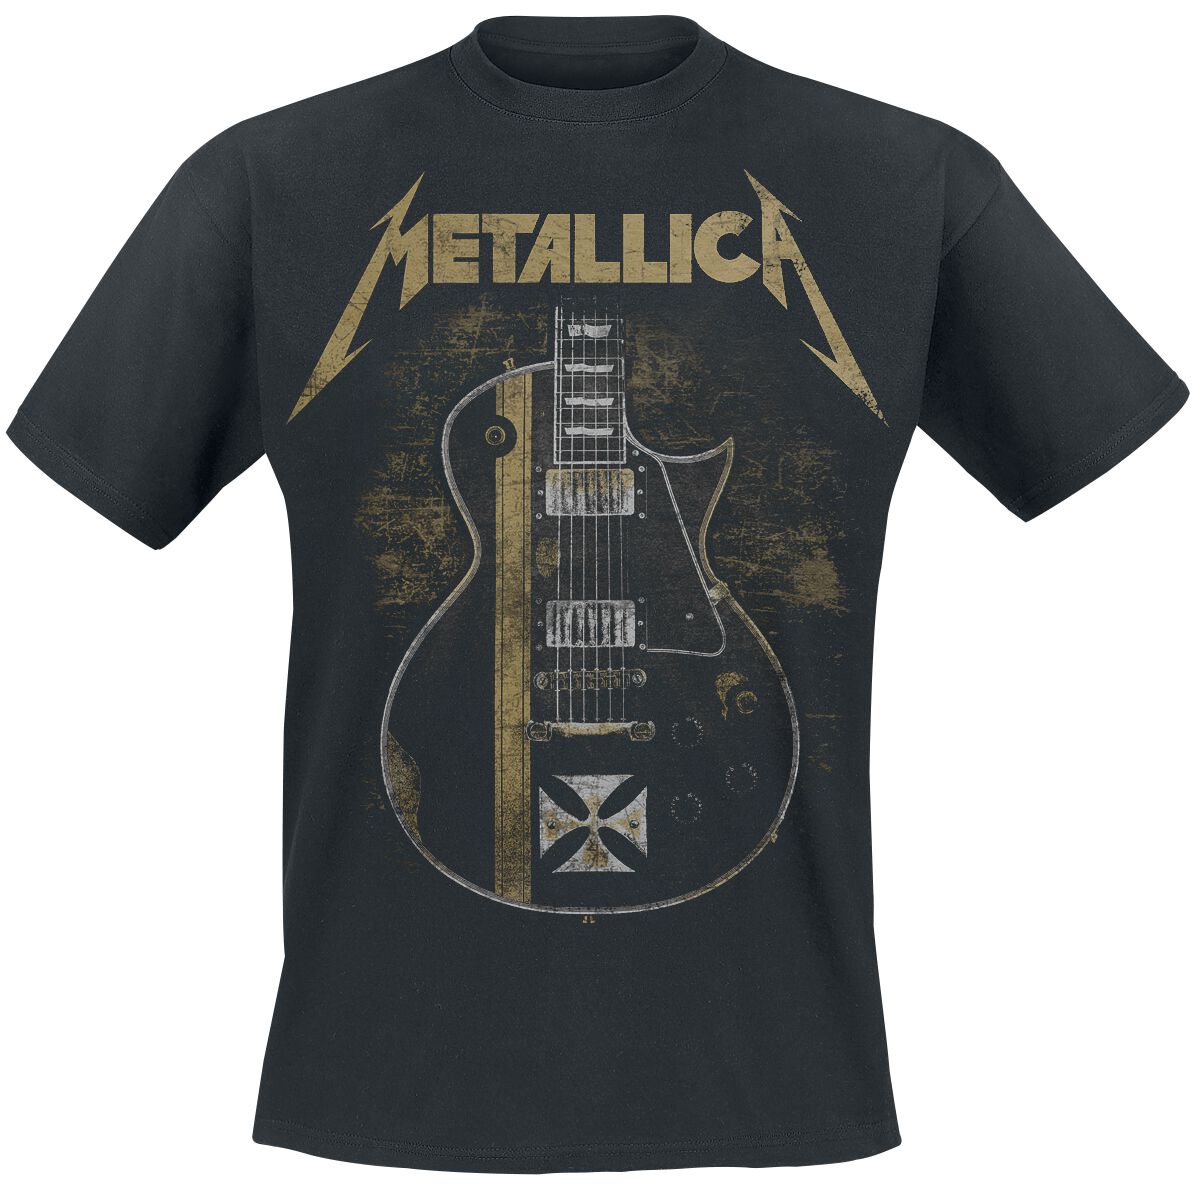 Metallica T-Shirt - Hetfield Iron Cross Guitar - S bis 5XL - für Männer - Größe XL - schwarz  - Lizenziertes Merchandise!